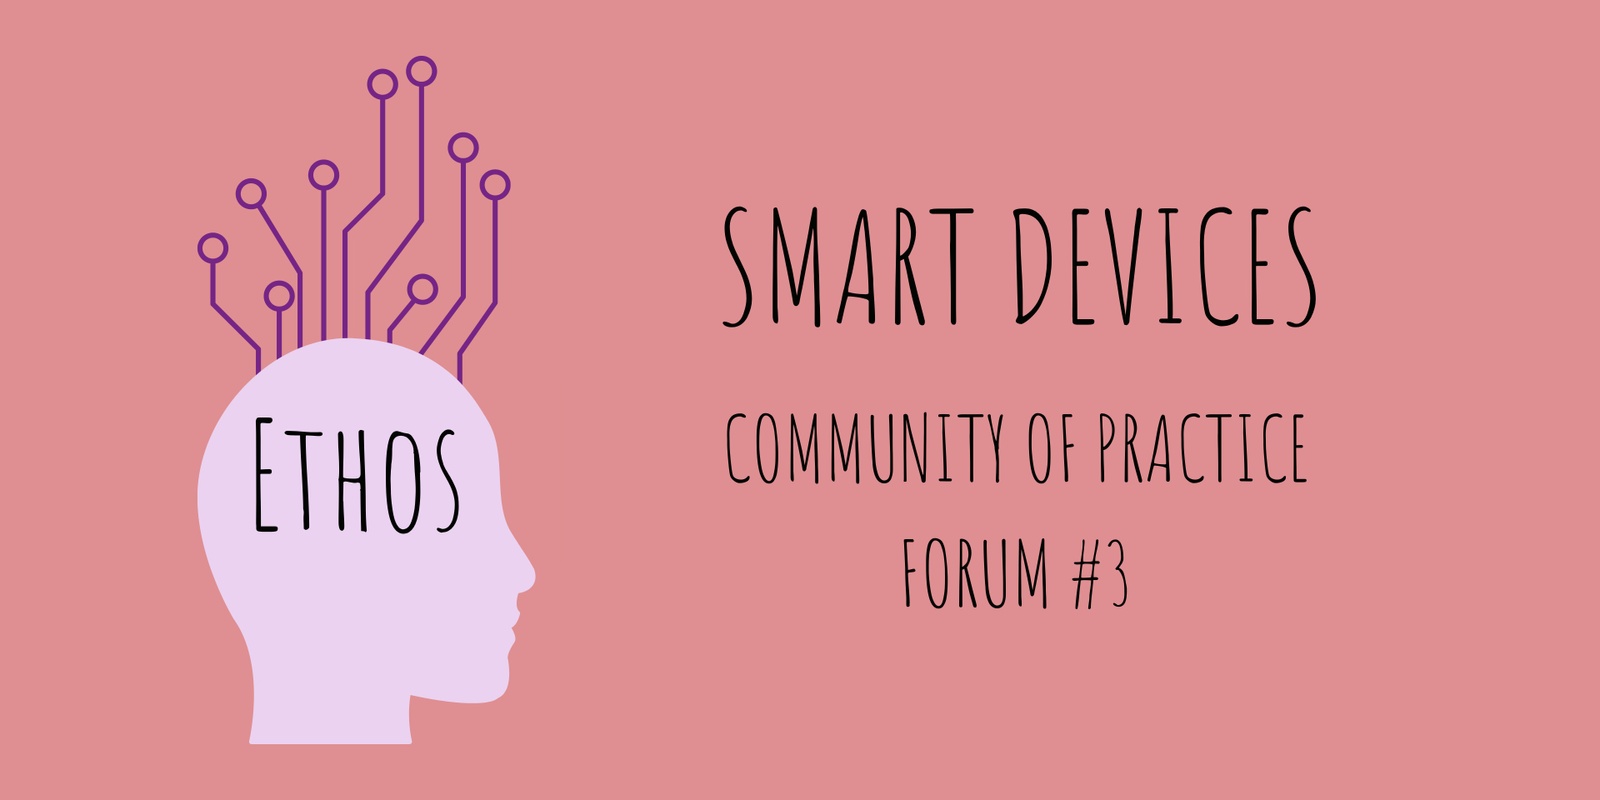 Ethos Public Forum #3: Smart Devices